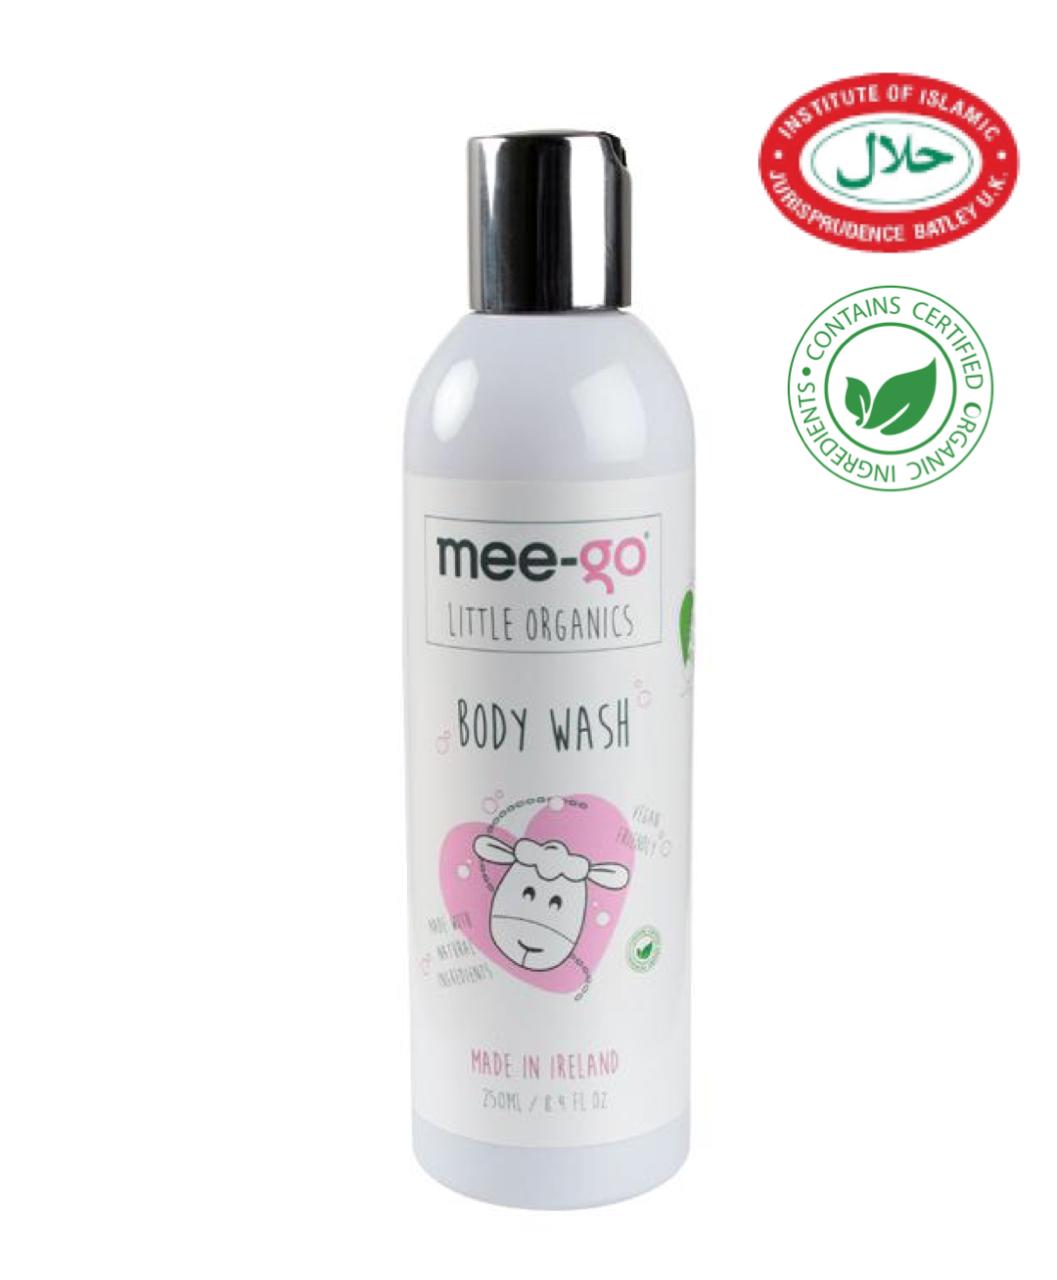 Mee-go Little Organics Halal Body Wash - 250ml - Laadlee